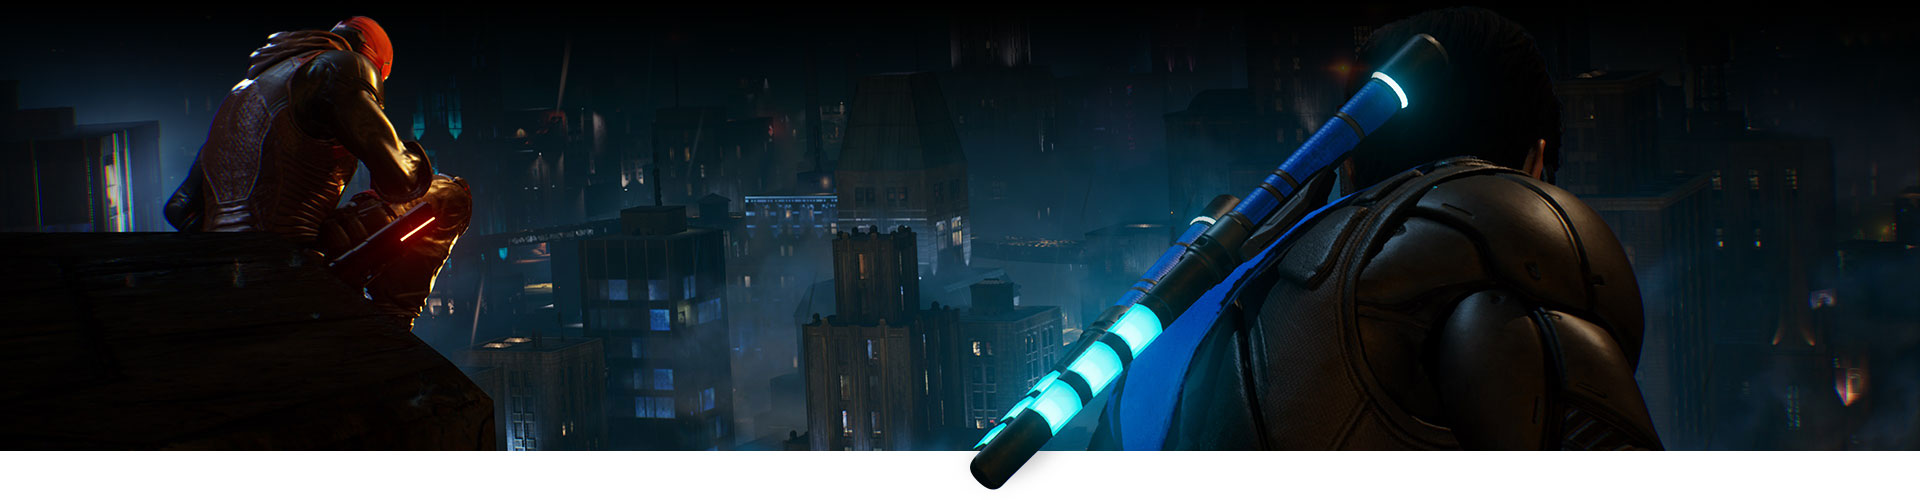 Red Hood et Nightwing se trouvent sur un toit surplombant la ville.